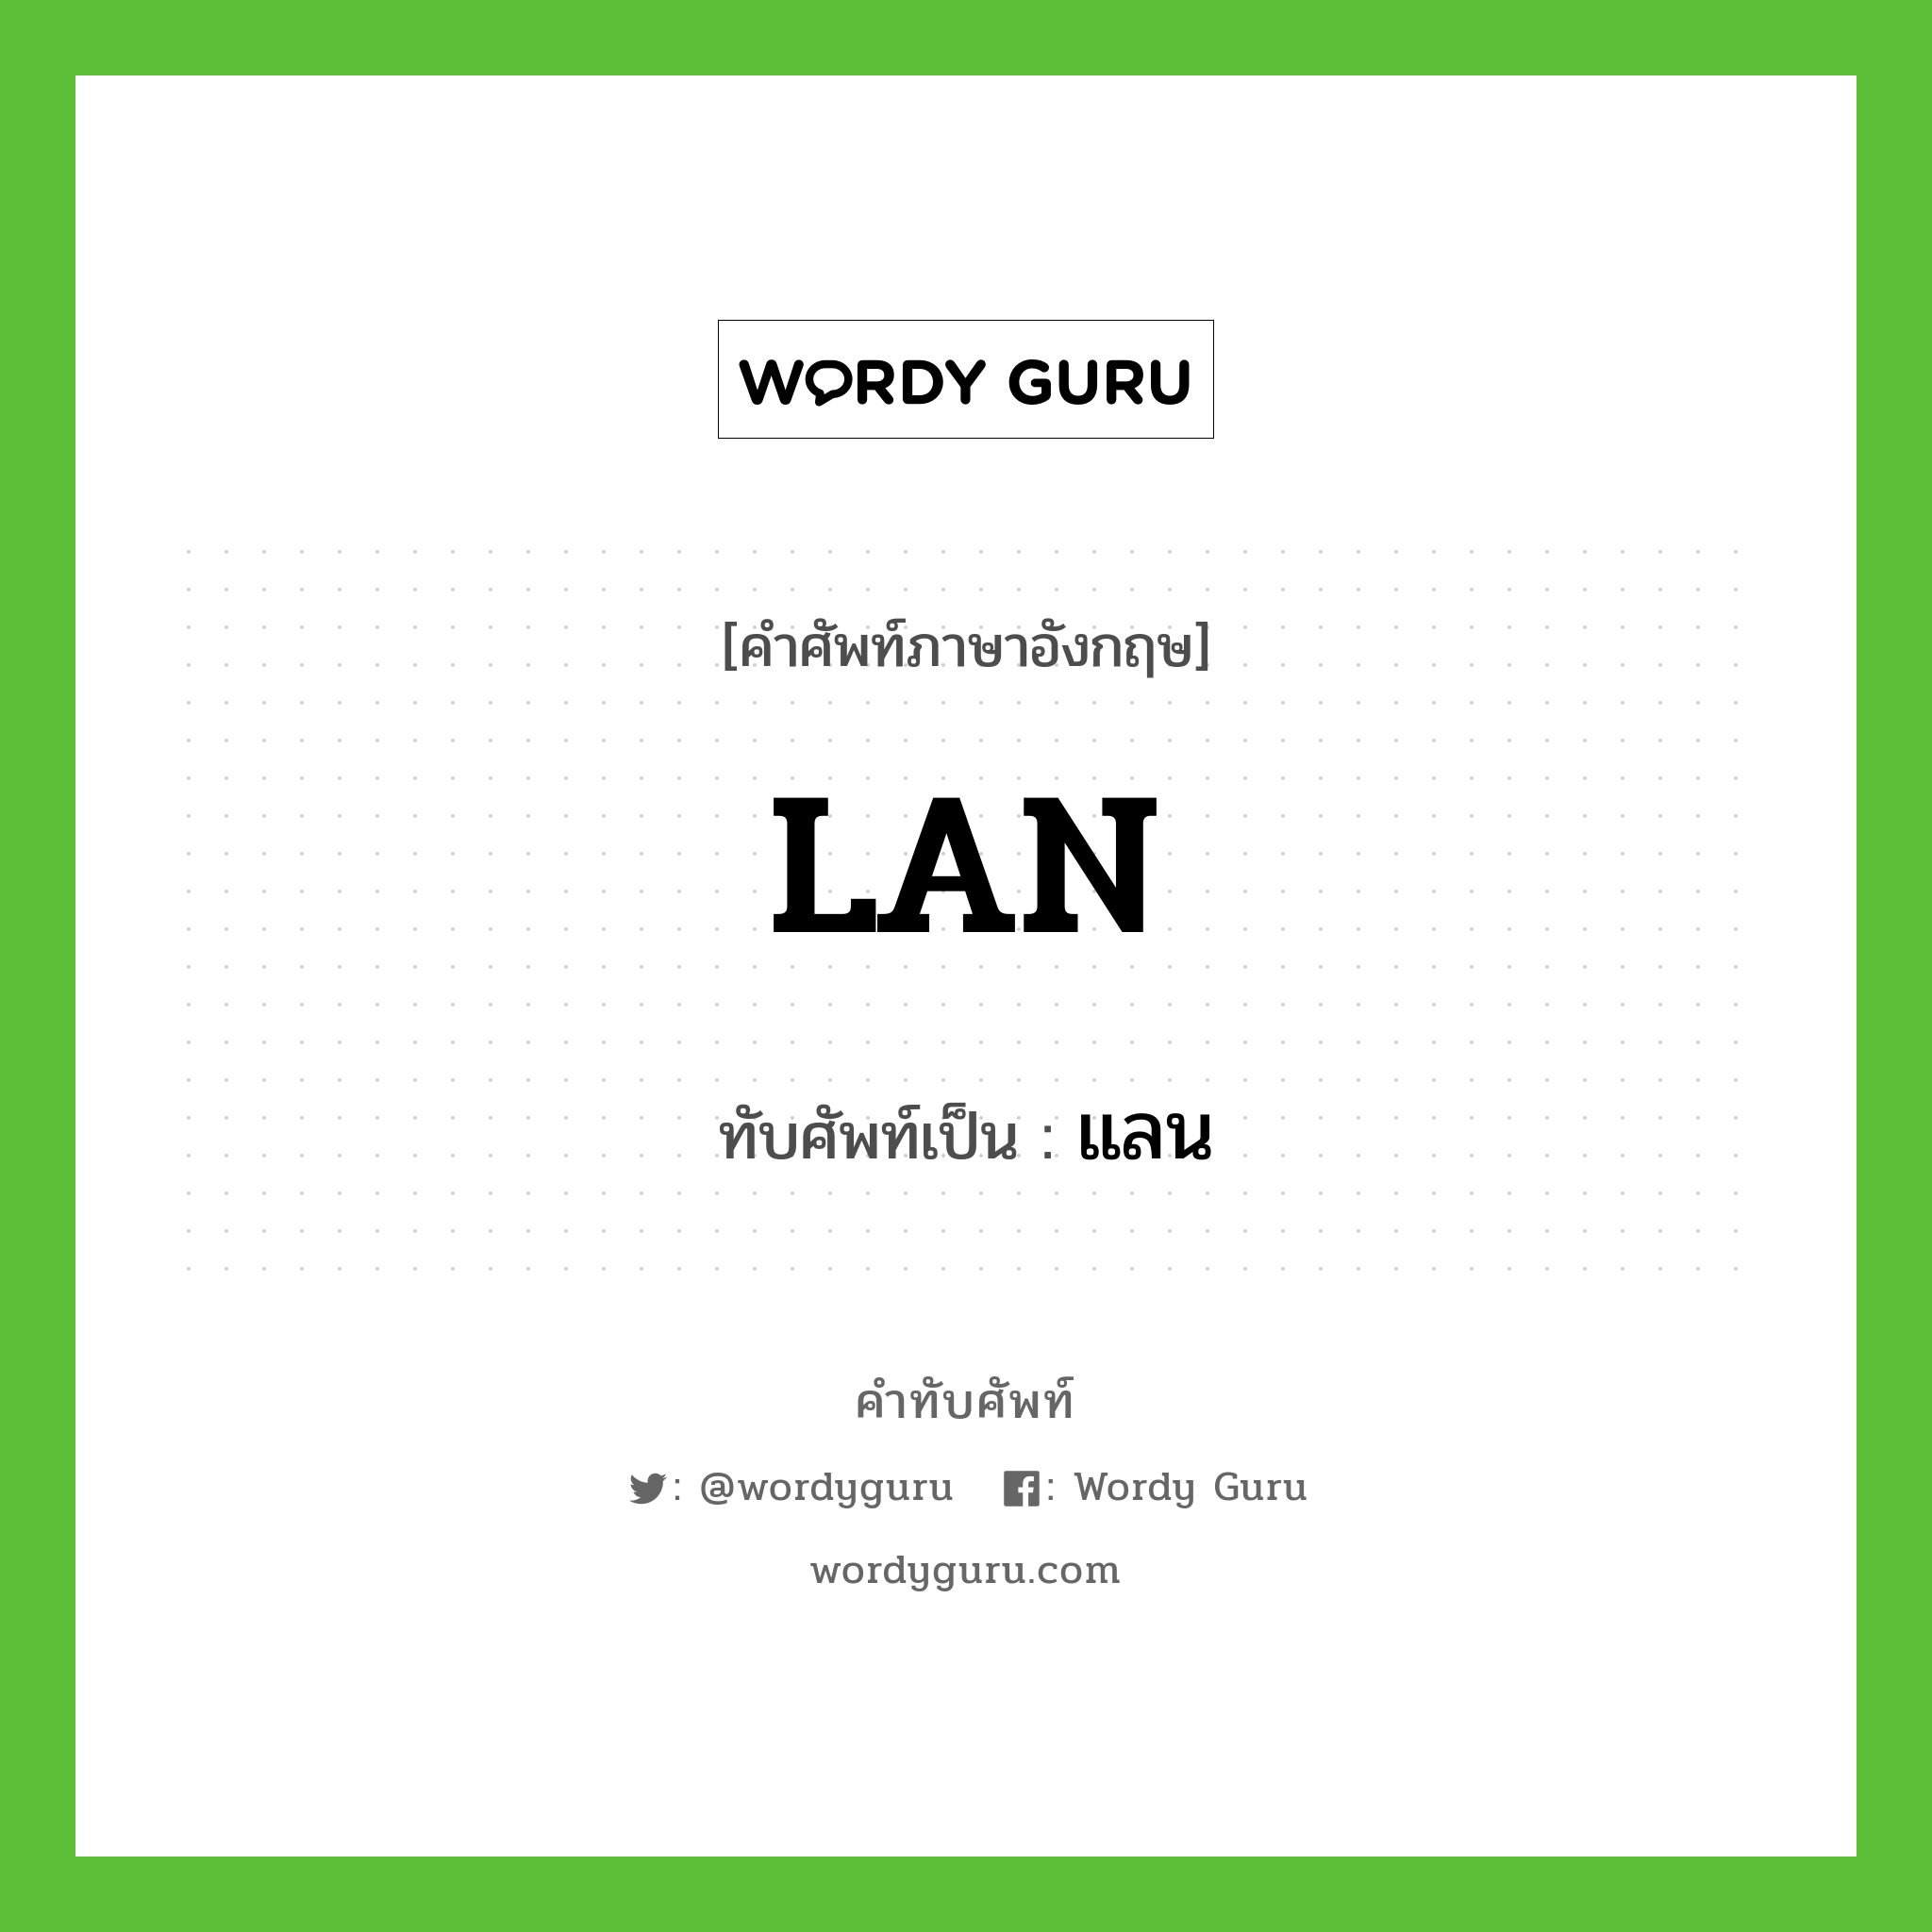 LAN เขียนเป็นคำไทยว่าอะไร?, คำศัพท์ภาษาอังกฤษ LAN ทับศัพท์เป็น แลน